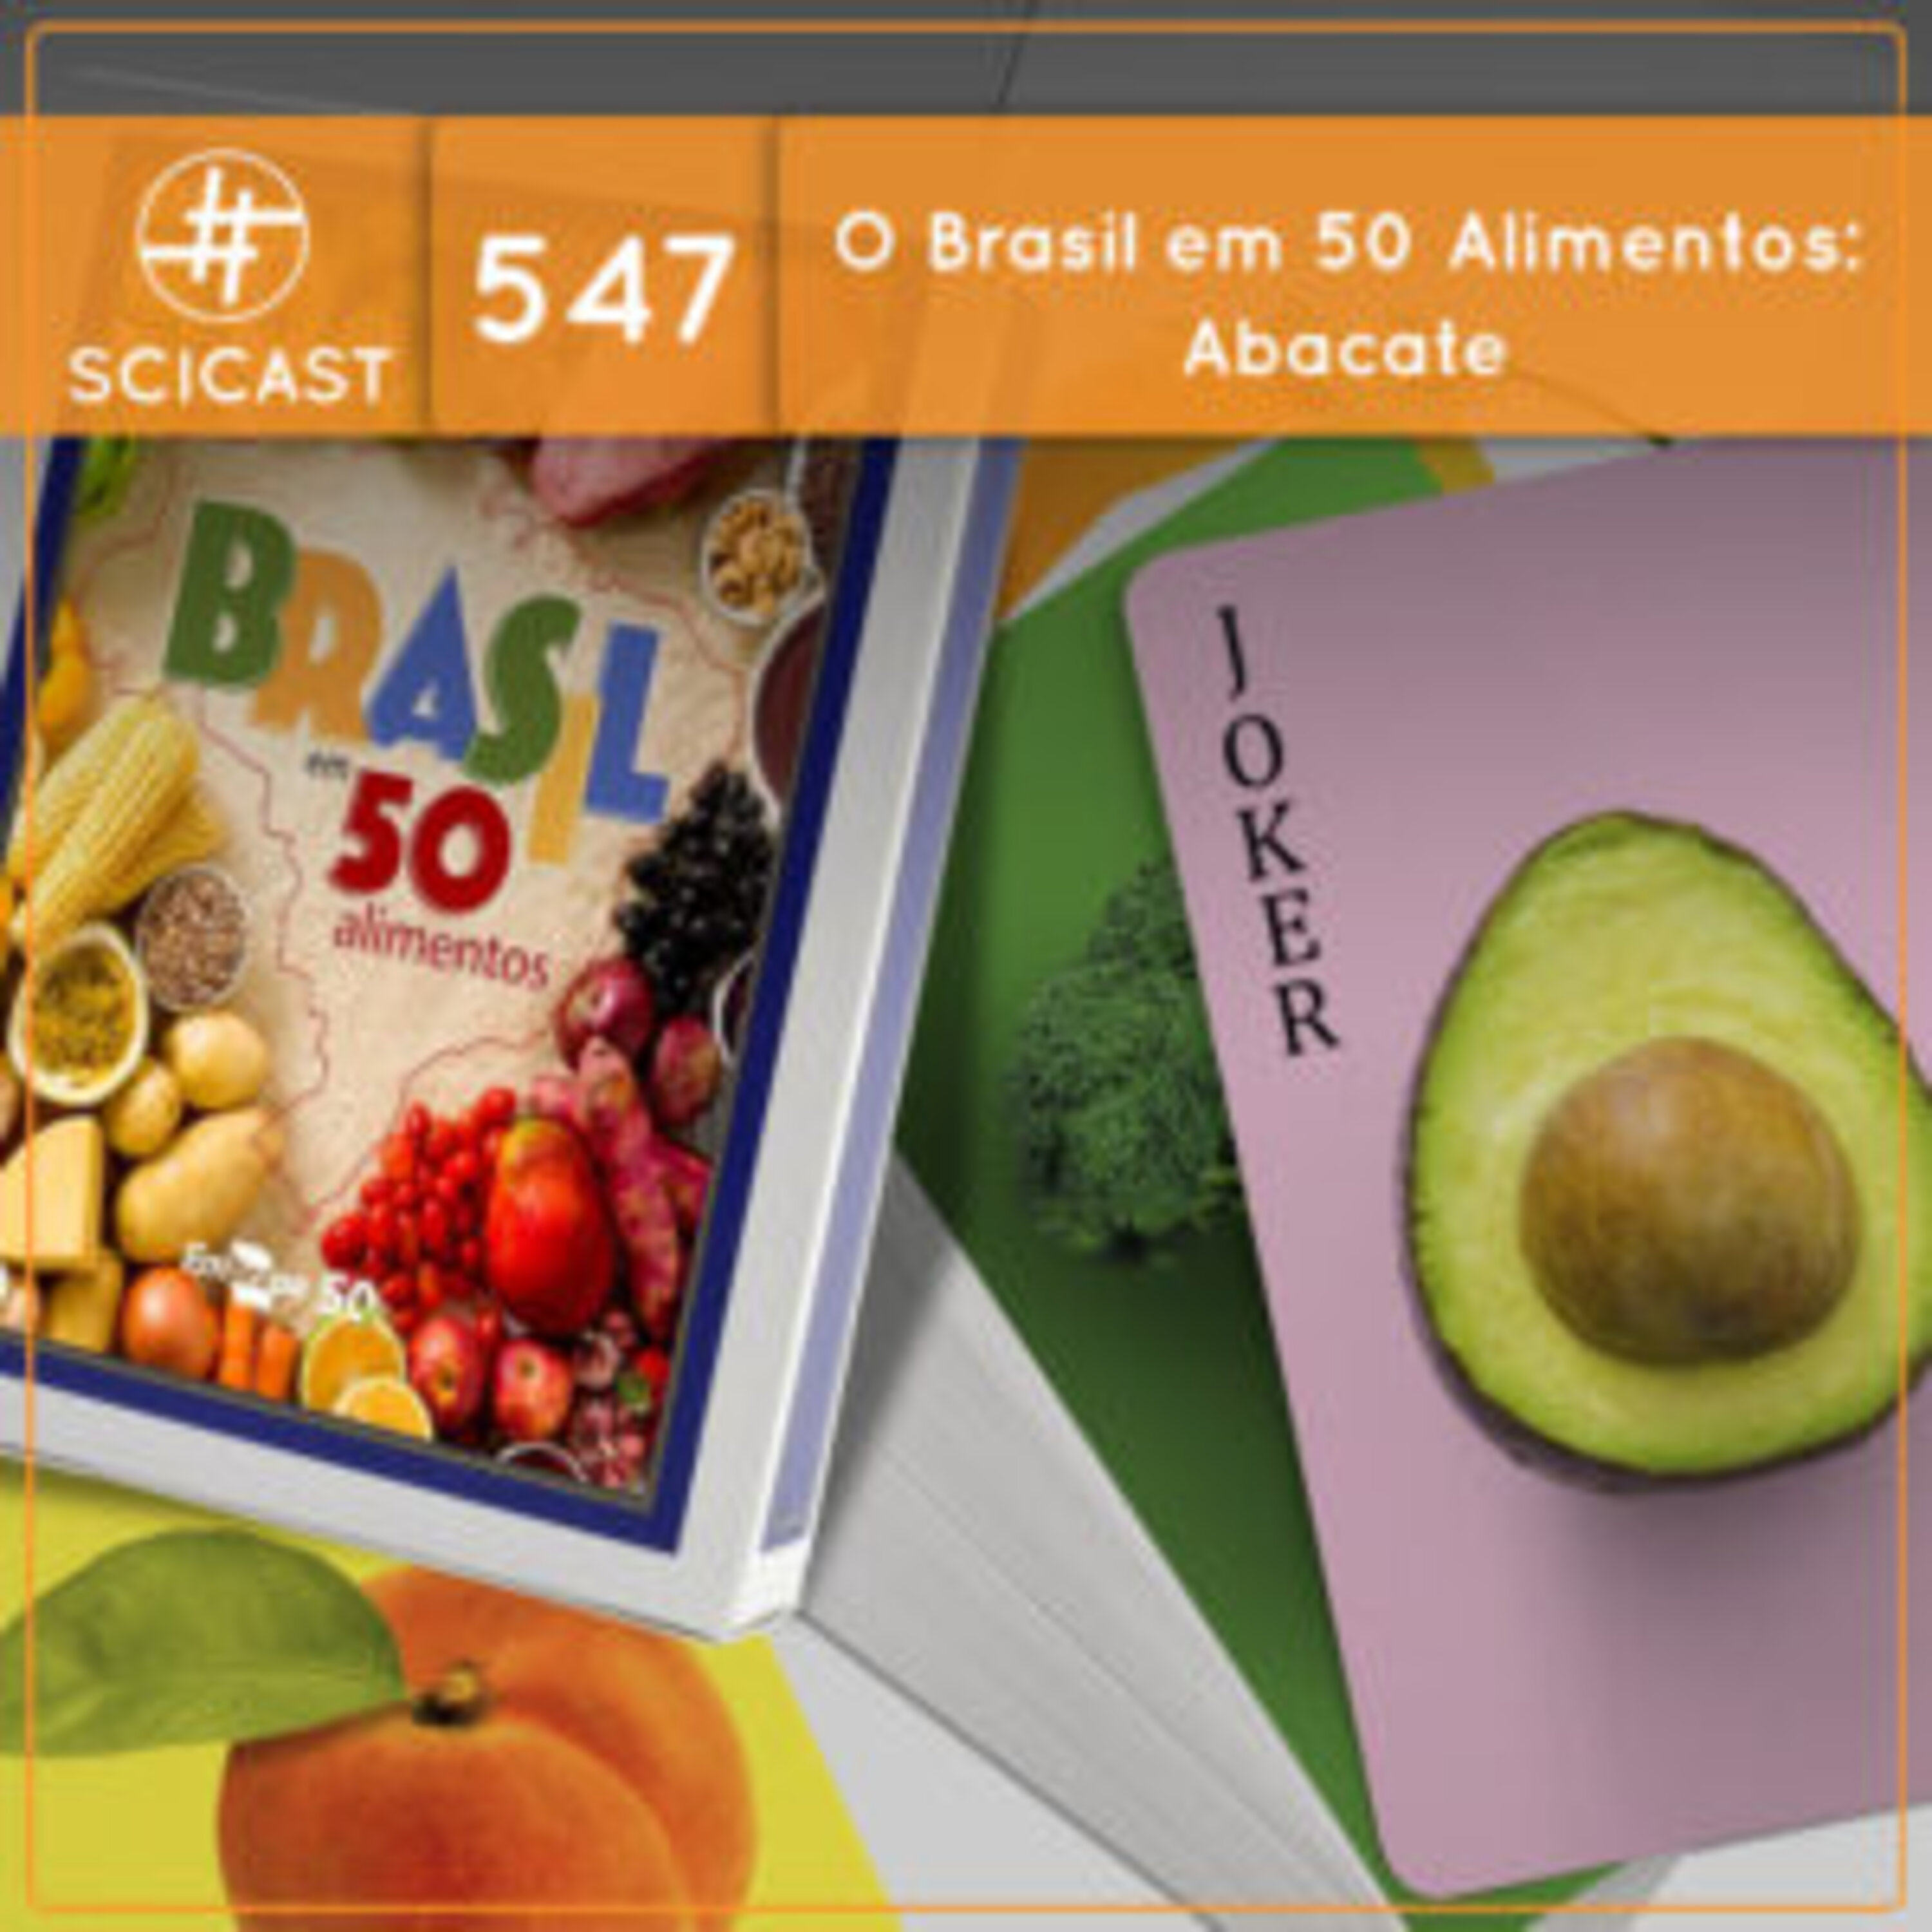 O Brasil em 50 alimentos: Abacate (SciCast #547)